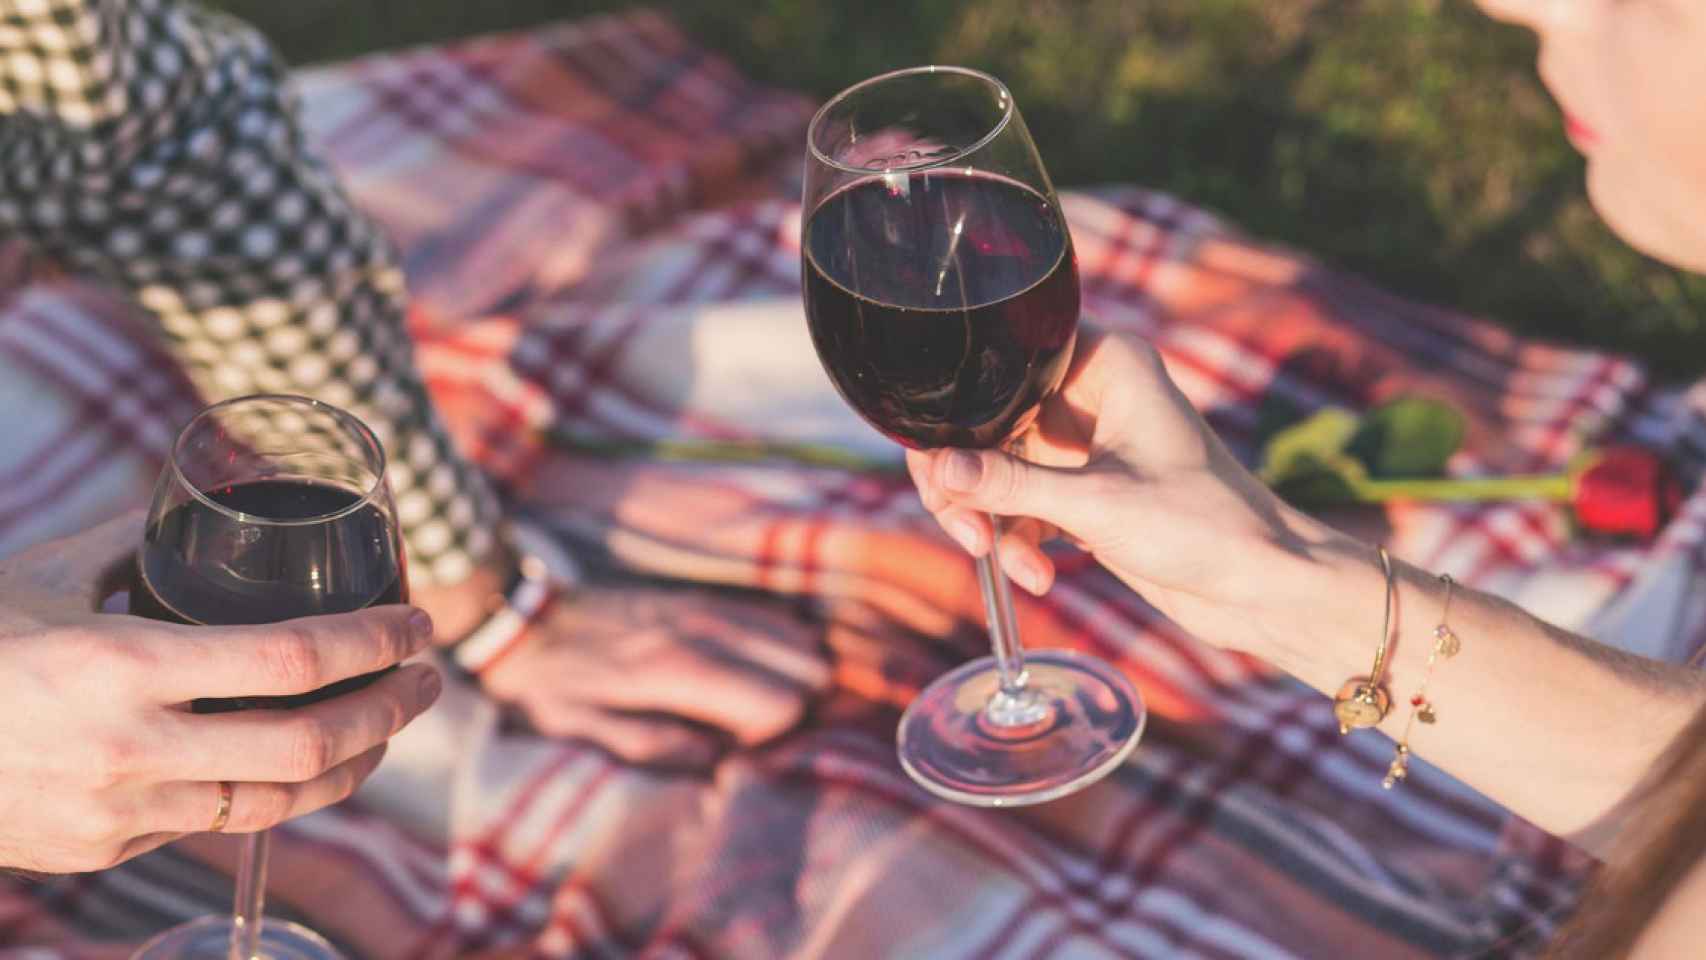 Un picnic con vino en Barcelona / PEXELS